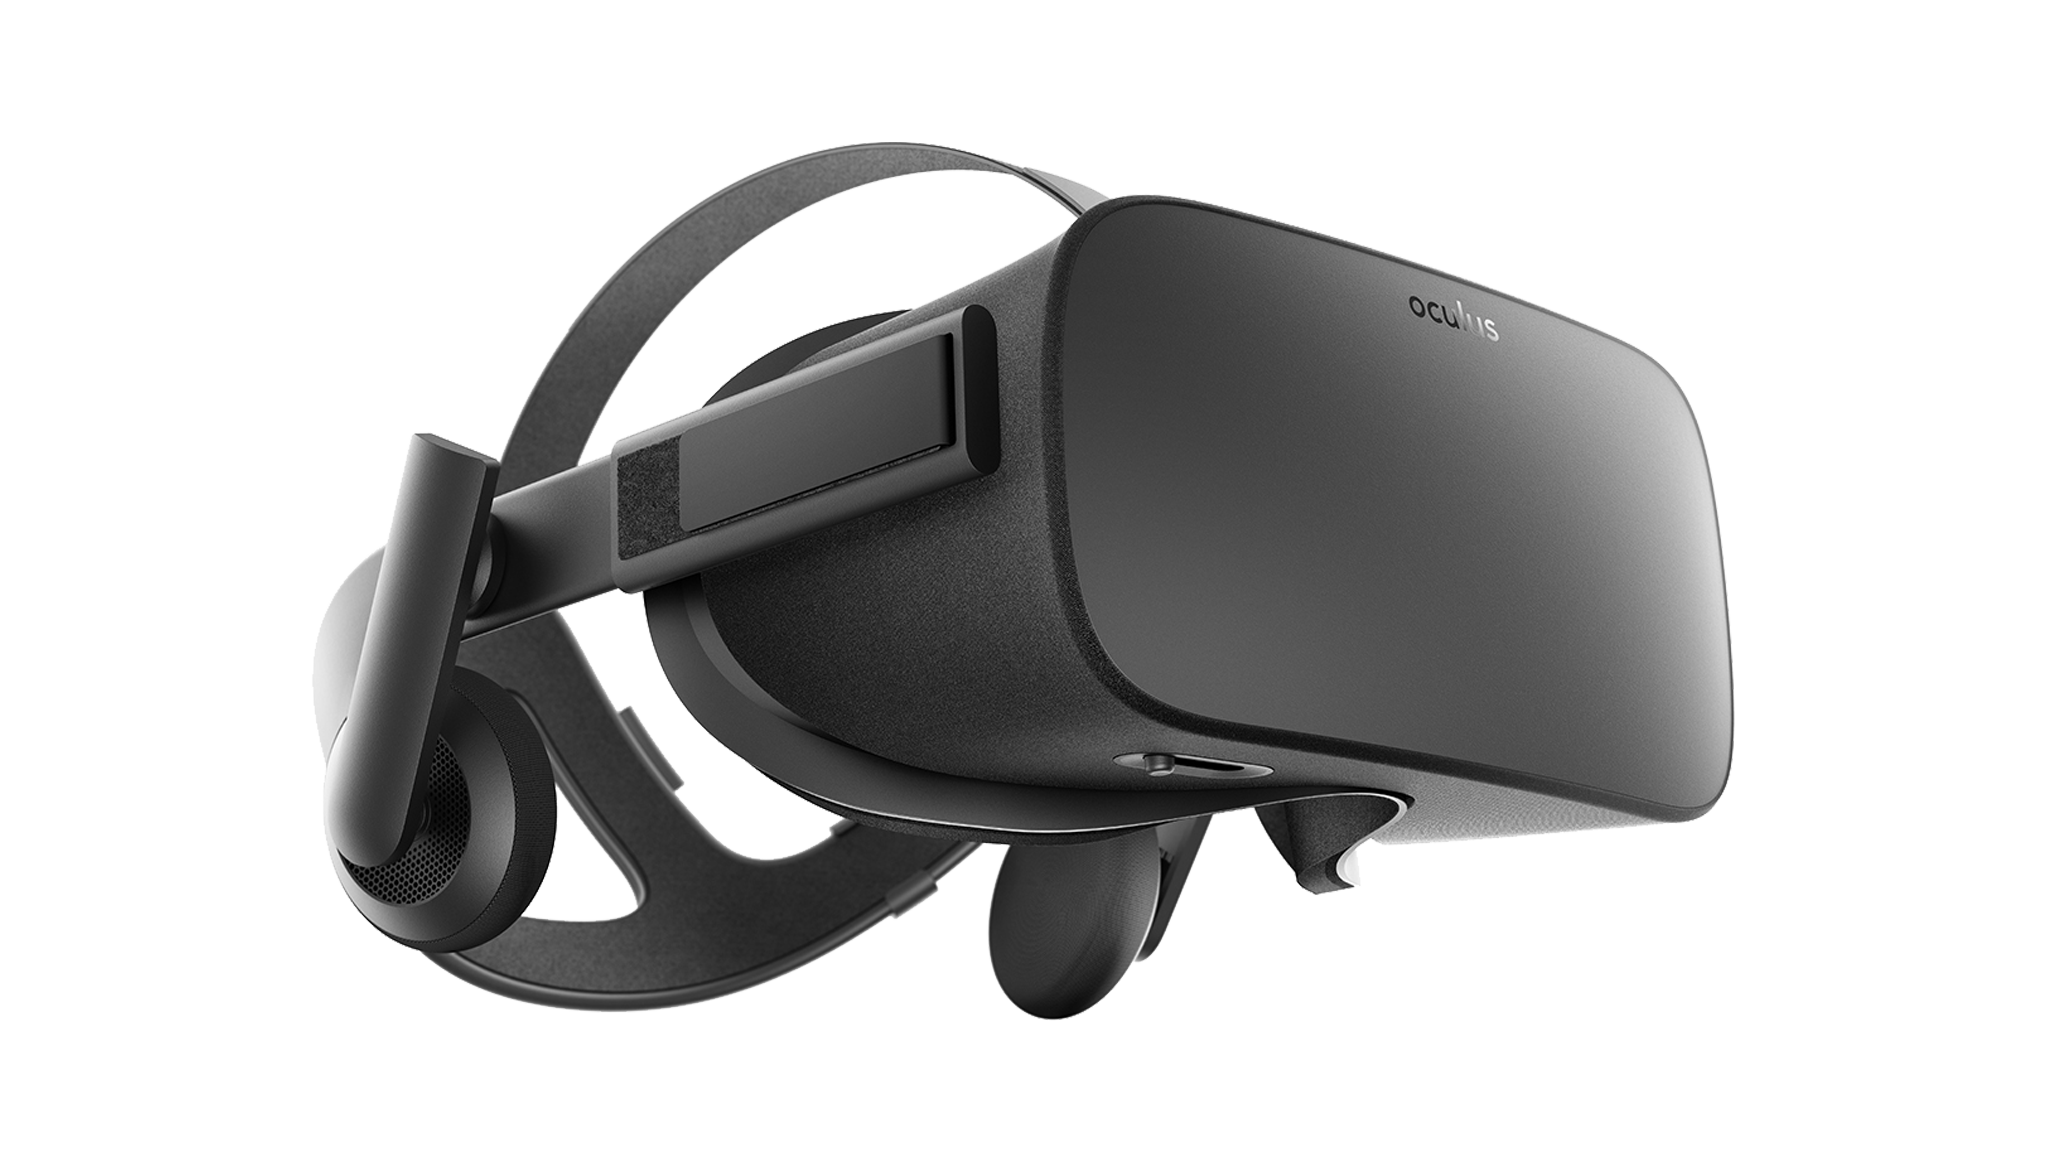 oculus-rift-virtual-reality